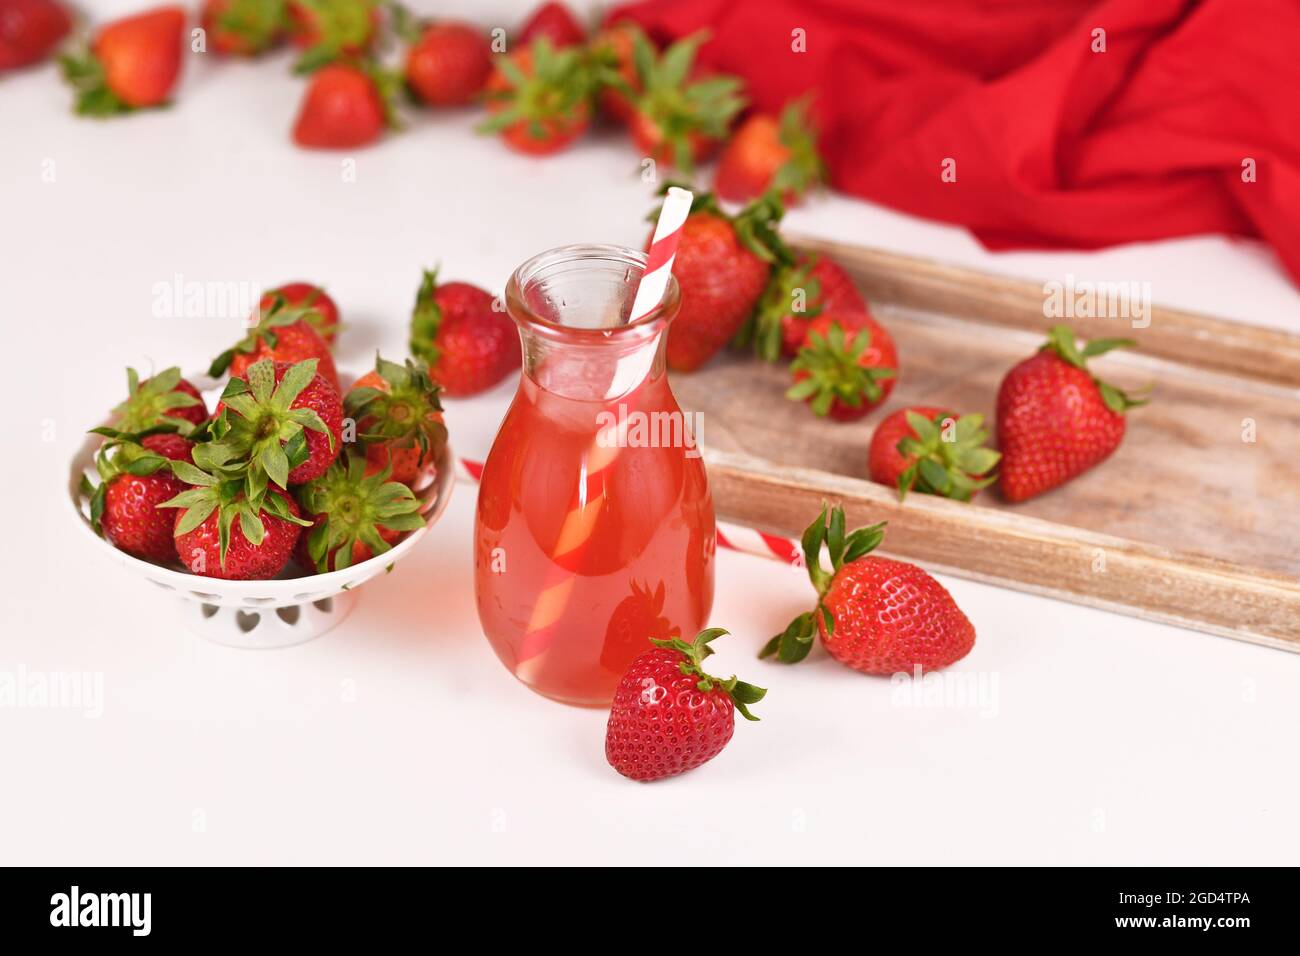 Limonade aux fruits à la fraise rouge maison dans un pot entouré de baies Banque D'Images